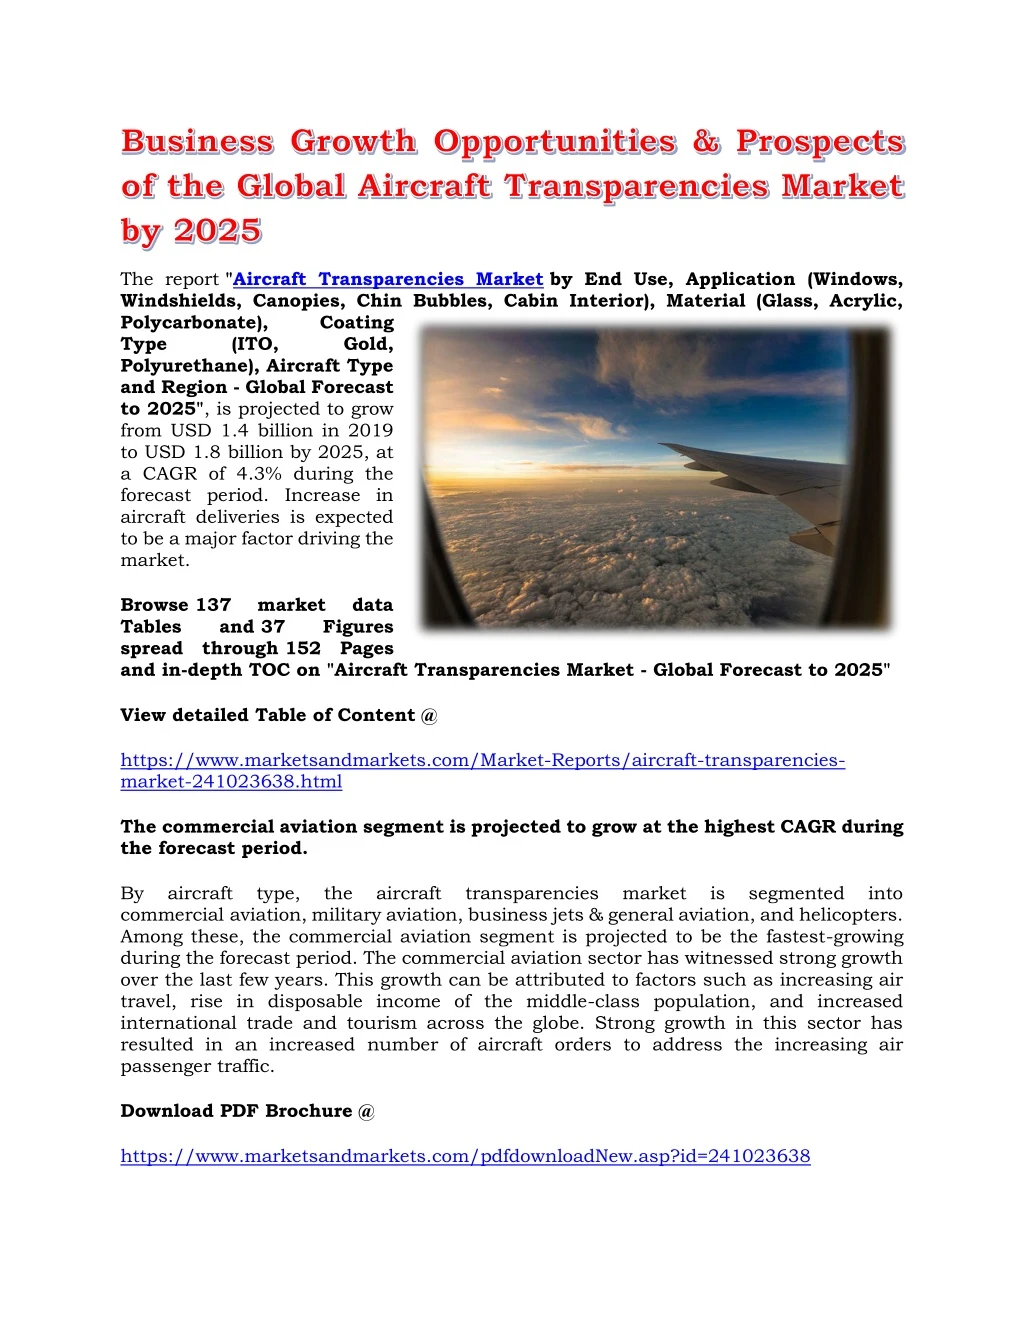 the report aircraft transparencies market